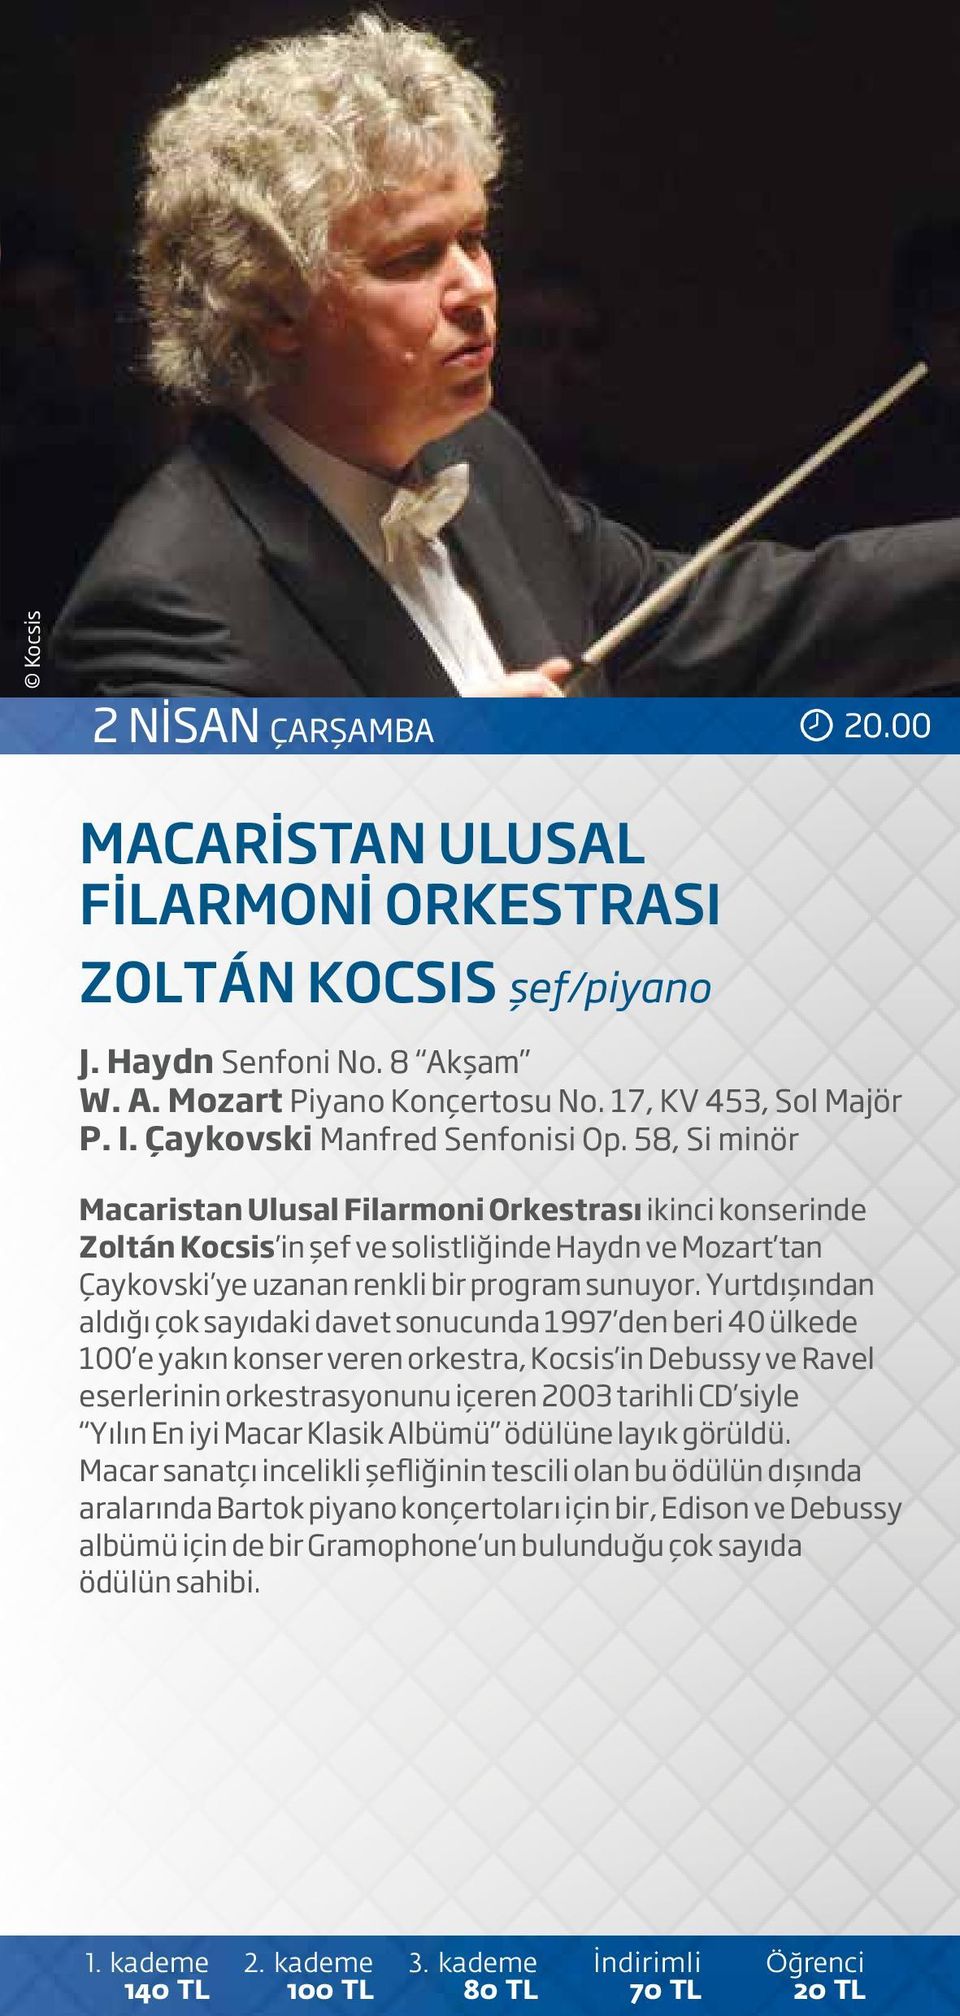 58, Si minör Macaristan Ulusal Filarmoni Orkestrası ikinci konserinde Zoltán Kocsis in şef ve solistliğinde Haydn ve Mozart tan Çaykovski ye uzanan renkli bir program sunuyor.